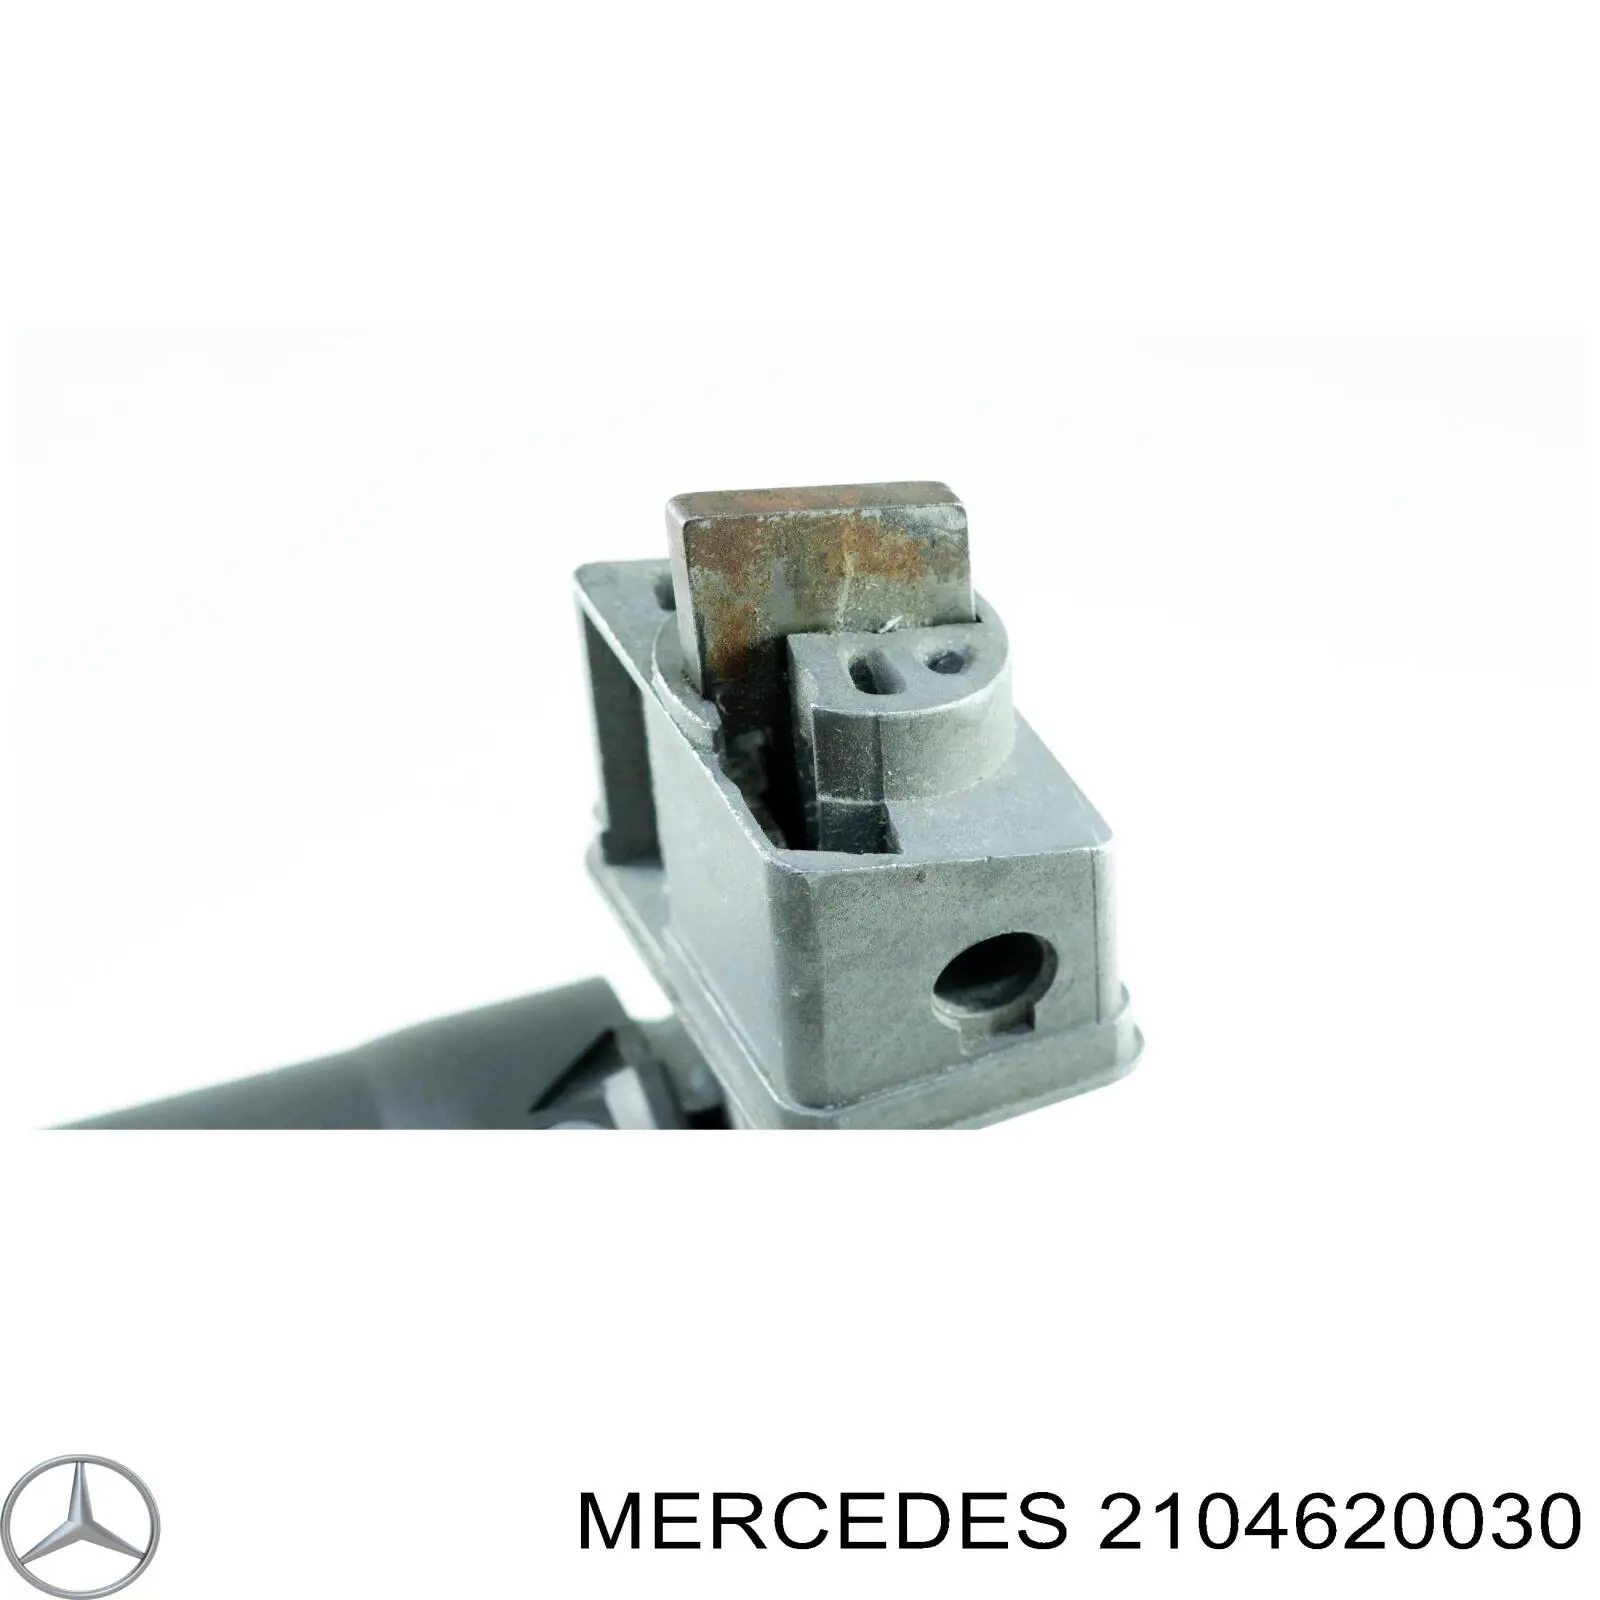 2104620030 Mercedes механизм блокировки рулевого колеса